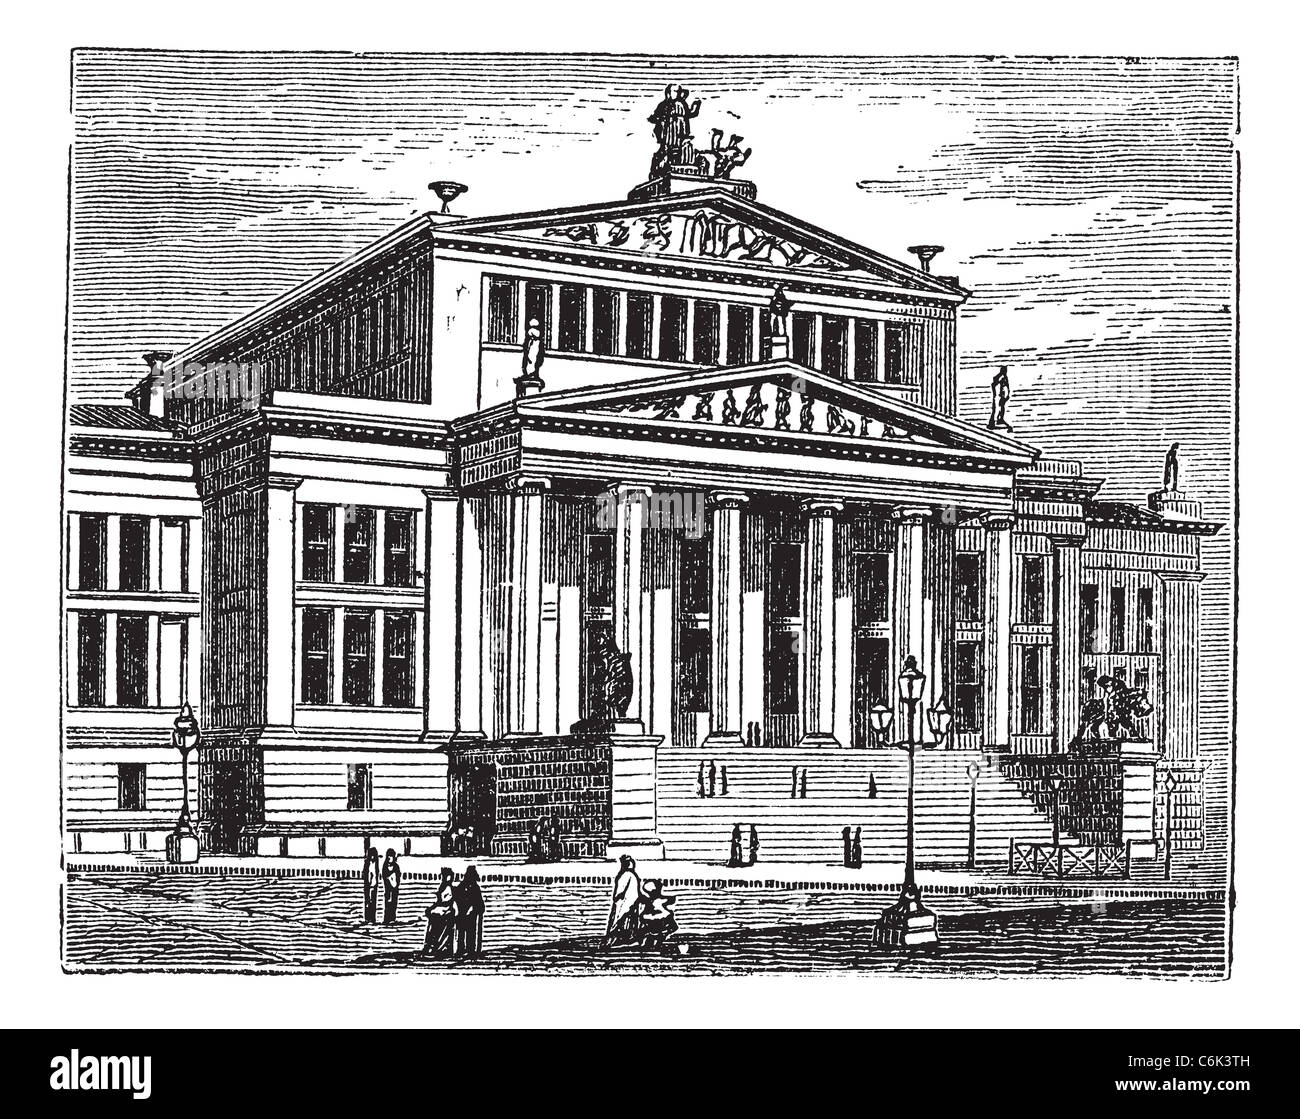 Konzerthaus Berlin also known as Schauspielhaus Berlin, concert hall, Berlin, Germany. Stock Photo